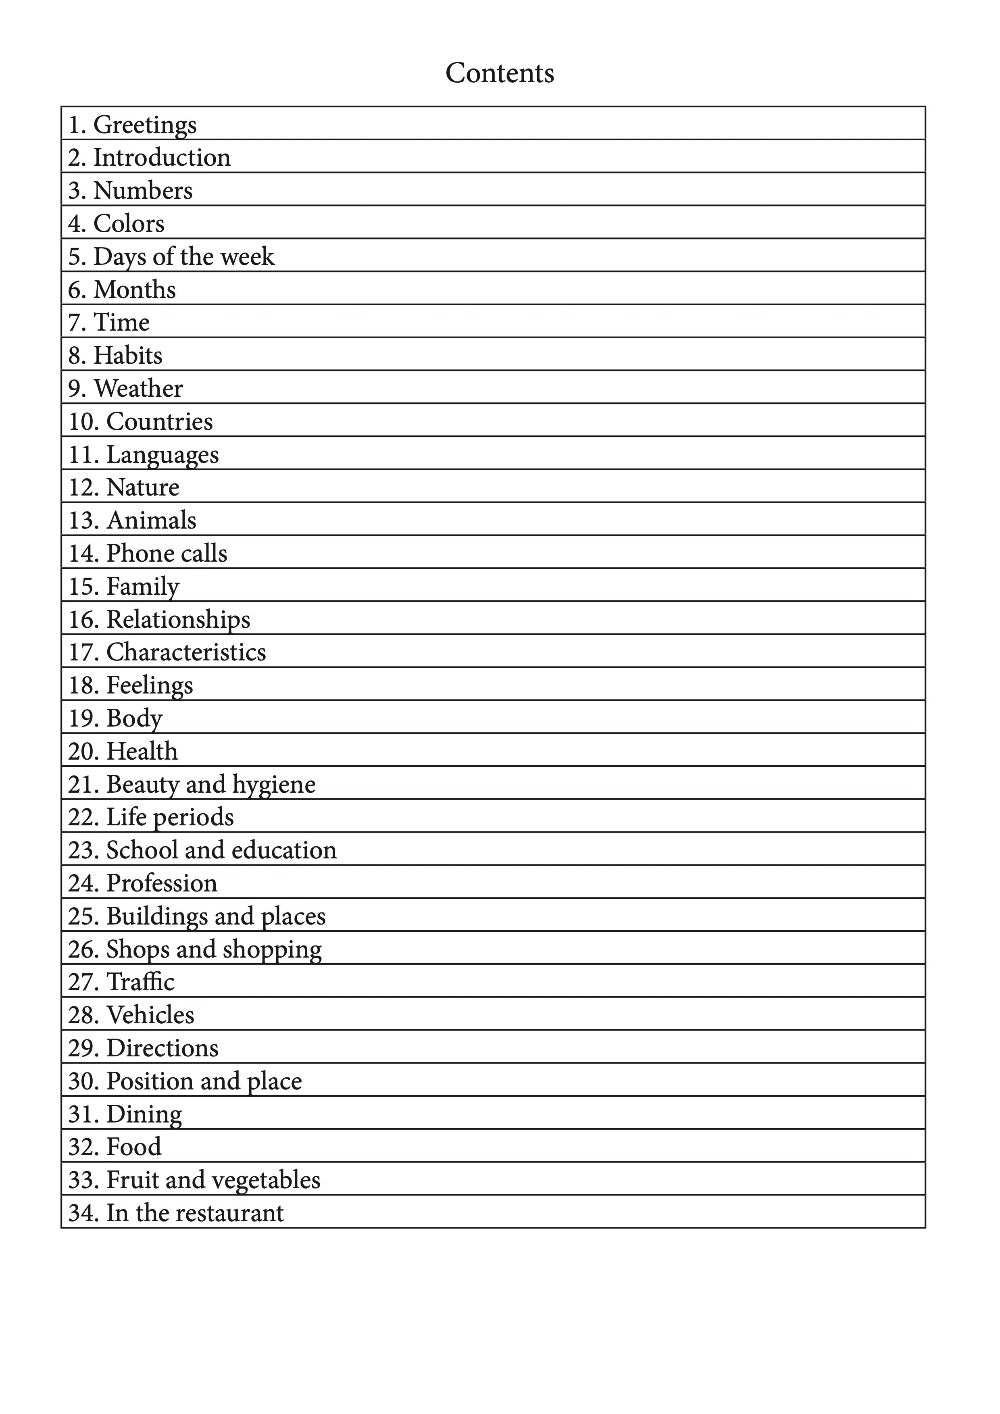 Burushaski language learning notebook contents page 1